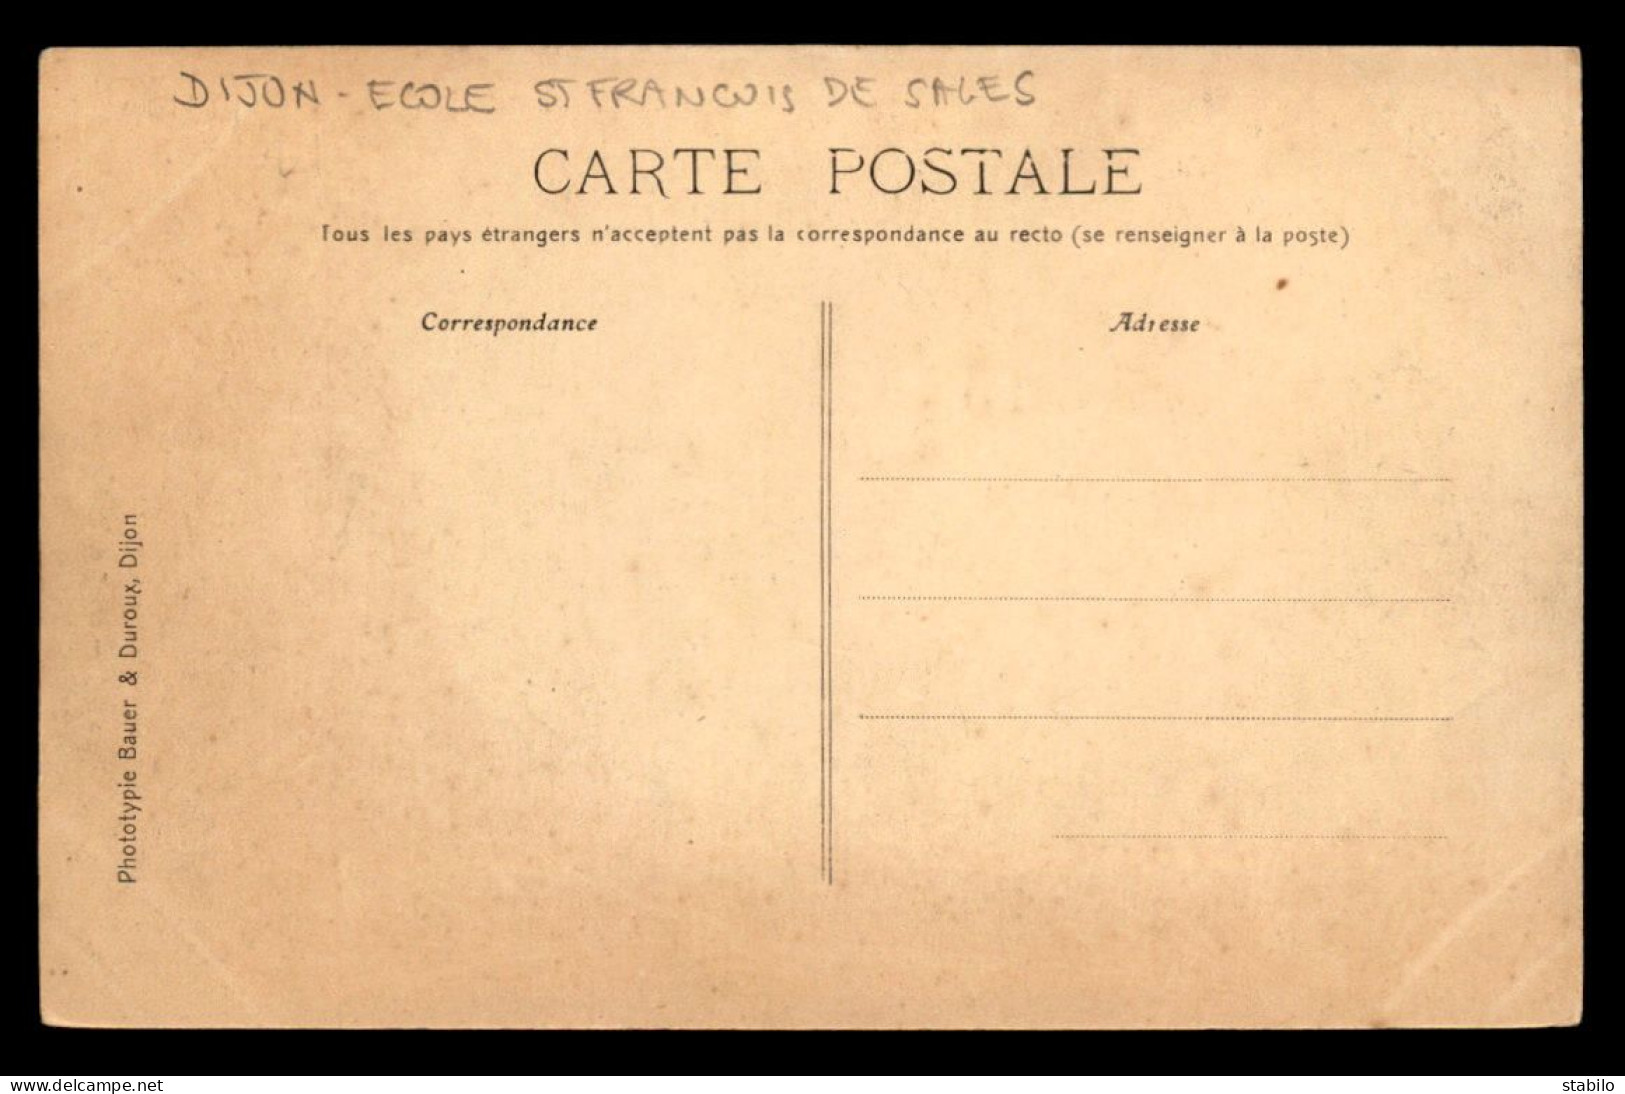 21 - DIJON - ECOLE ST-FRANCOIS-DE-SALES - REPRESENTATION THEATRALE DU BOURGEOIS GENTILHOMME FEVRIER 1905 - Dijon